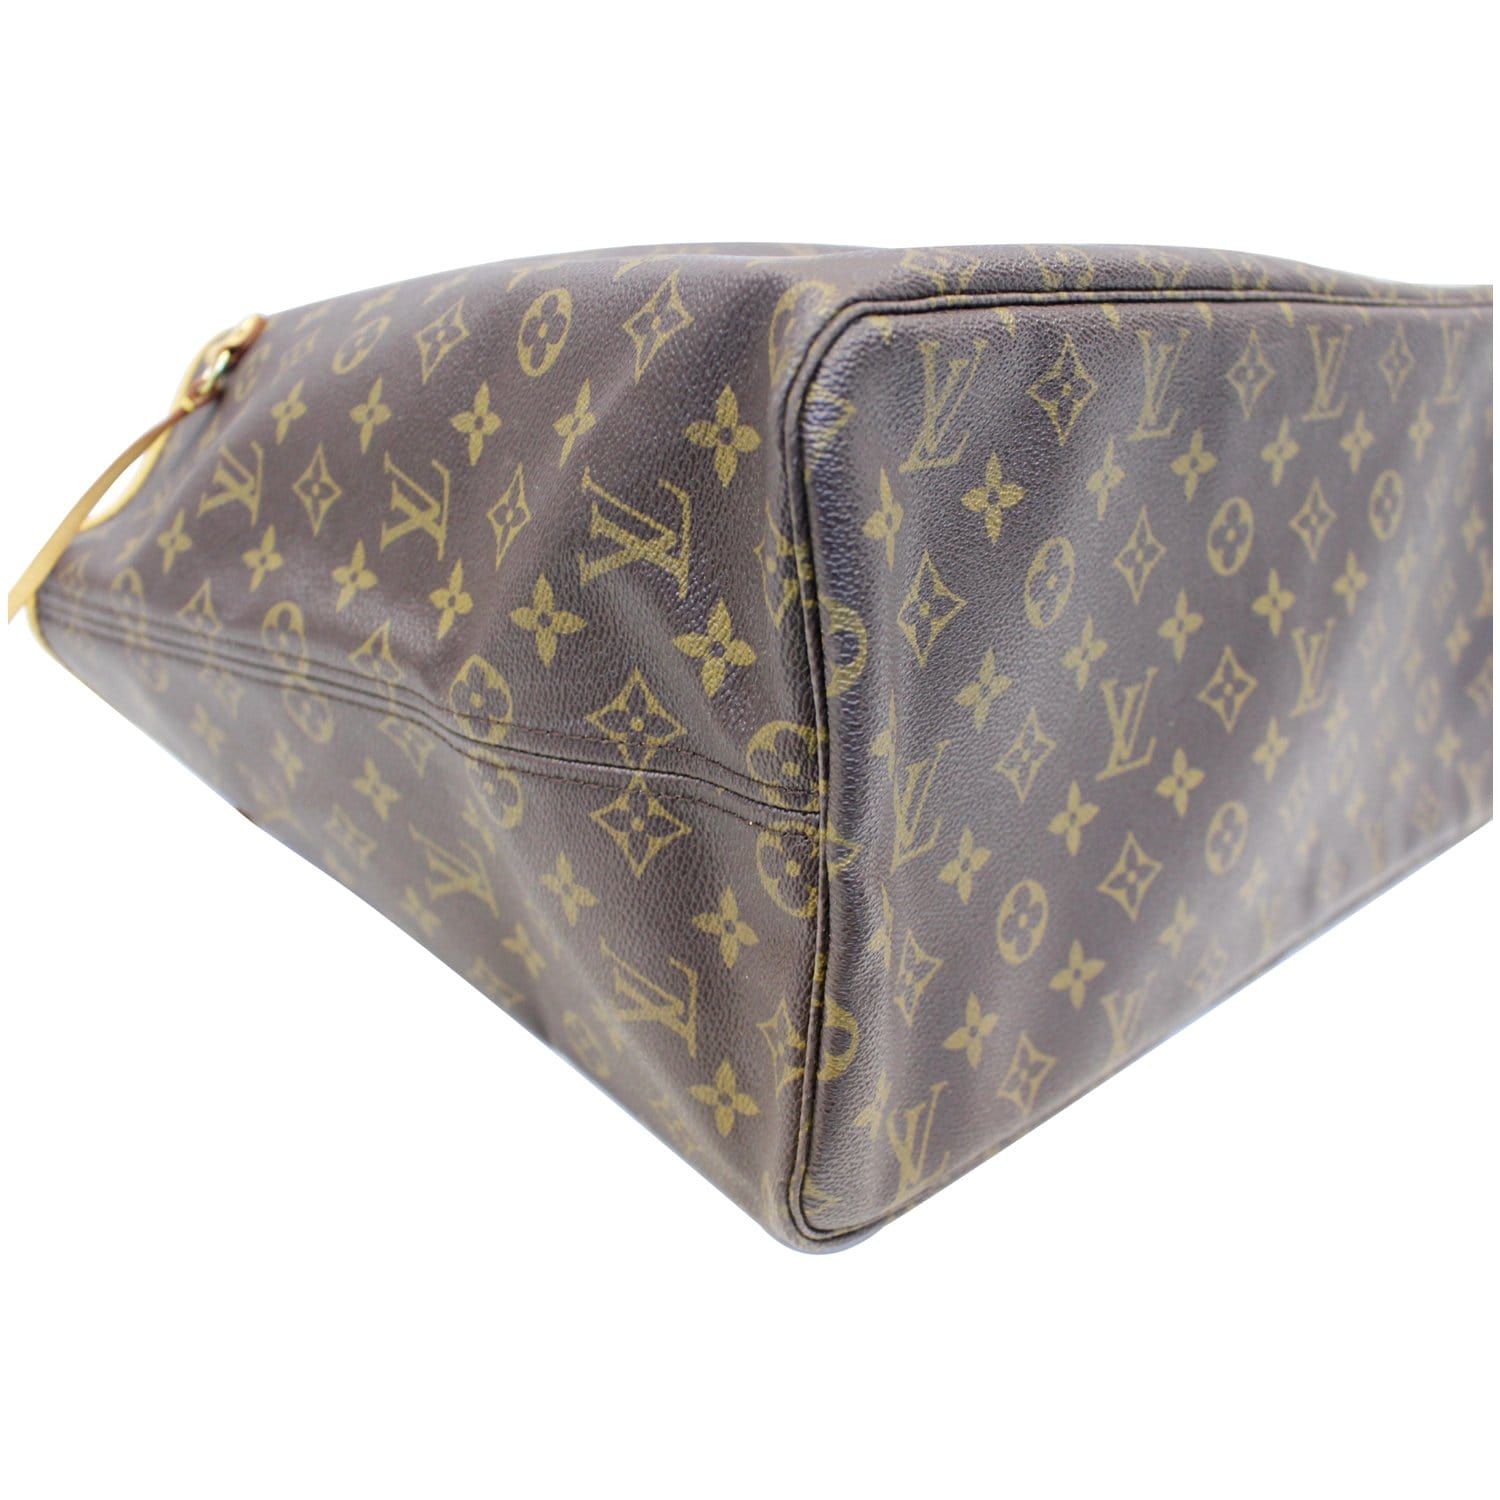 Louis Vuitton Neverfull Handbag 389205